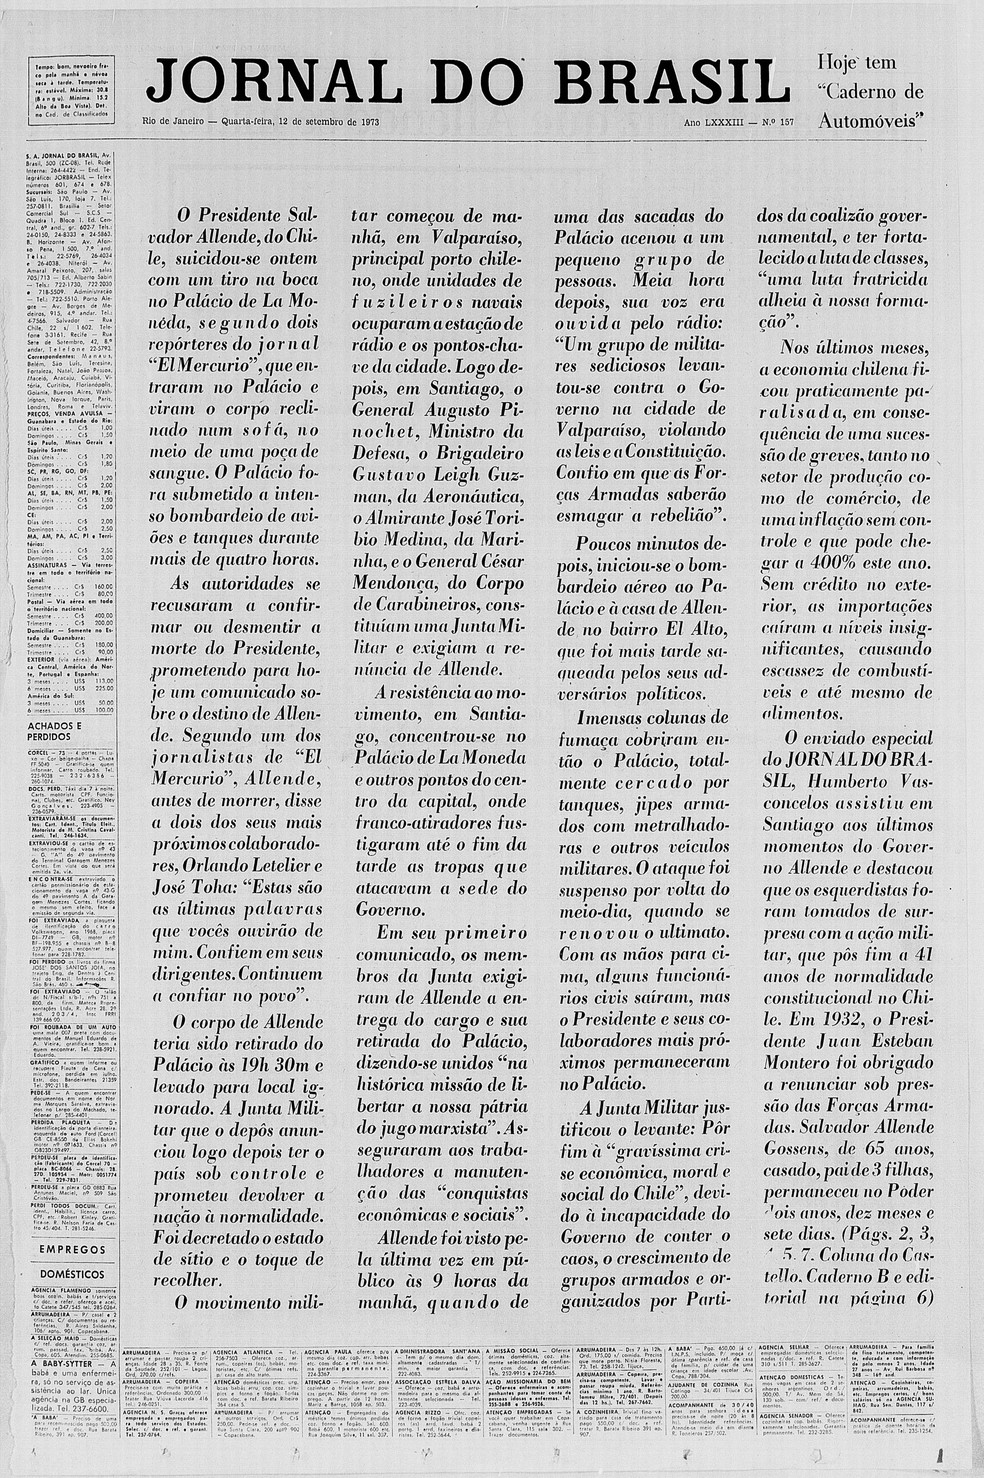 Morte de Salvador Allende foi noticiada na capa do 'Jornal do Brasil' sem título, após determinação do governo militar (Foto: Jornal do Brasil/CPDoc JB)